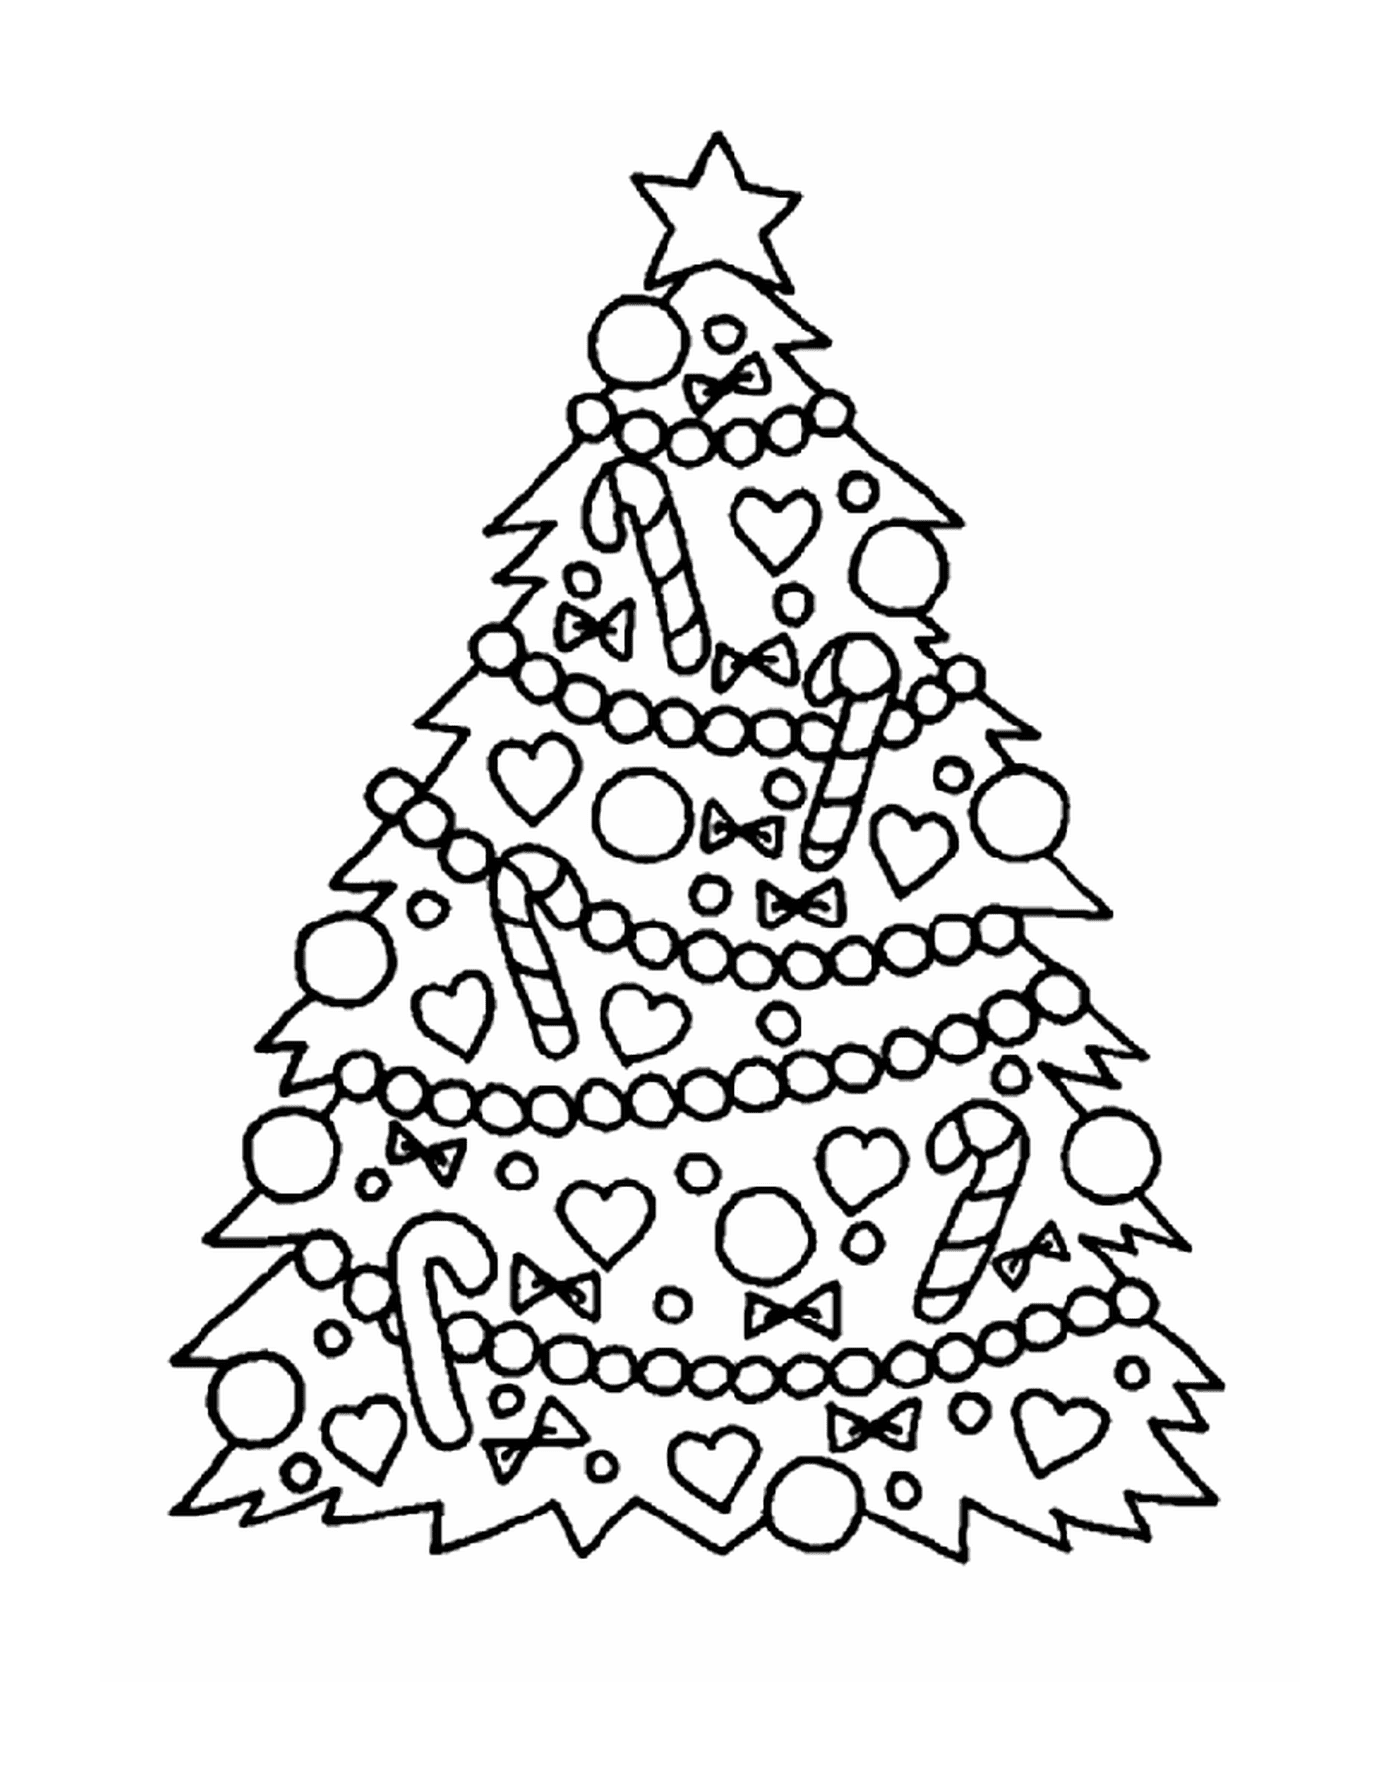  Ein Weihnachtsbaum mit Süßigkeiten und Herzen geschmückt 